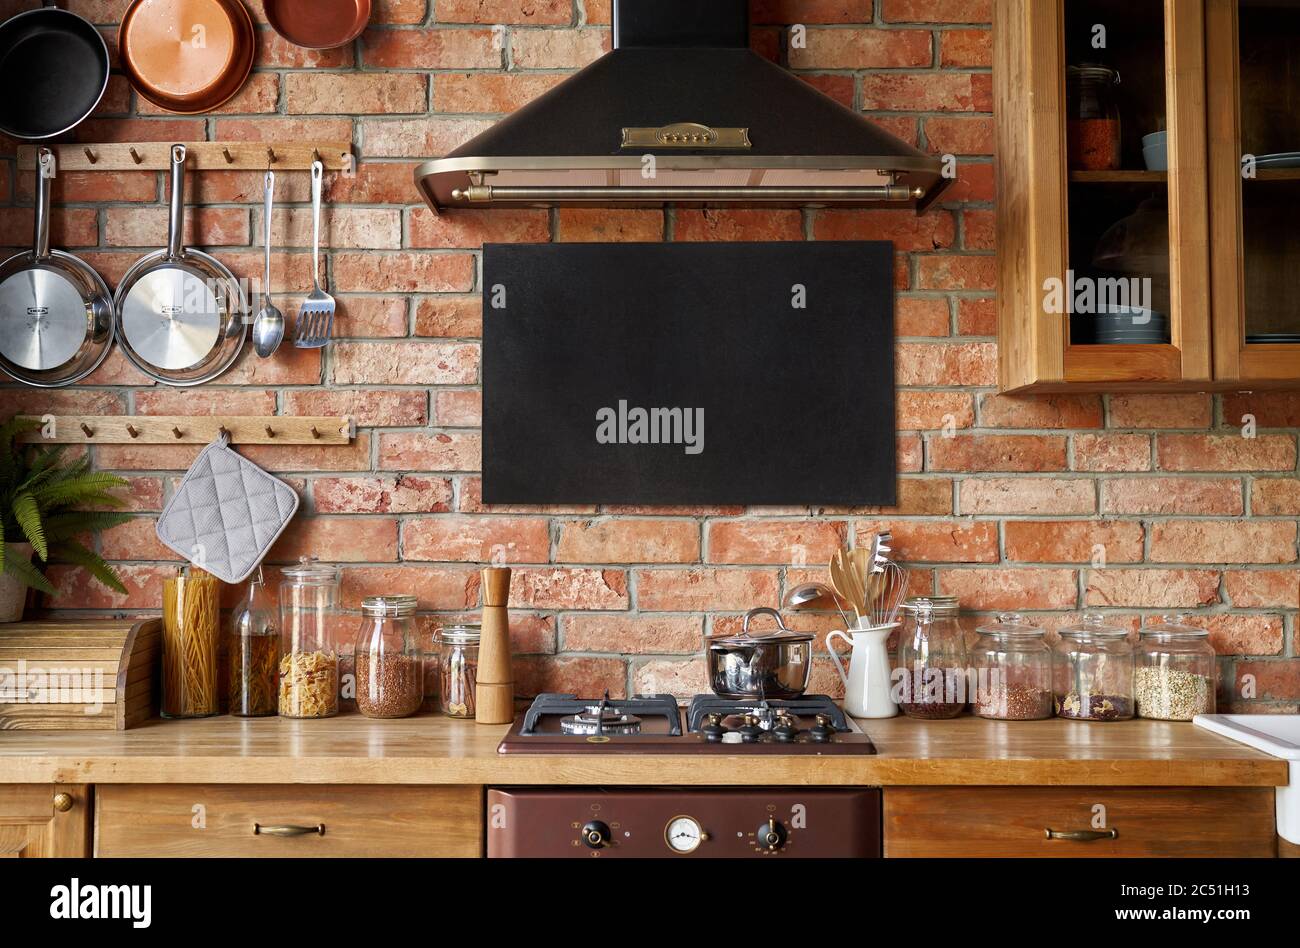 Modell der Kreidetafel im Kücheninnenraum. Panorama Hintergrund mit Küchenutensilien. Stockfoto